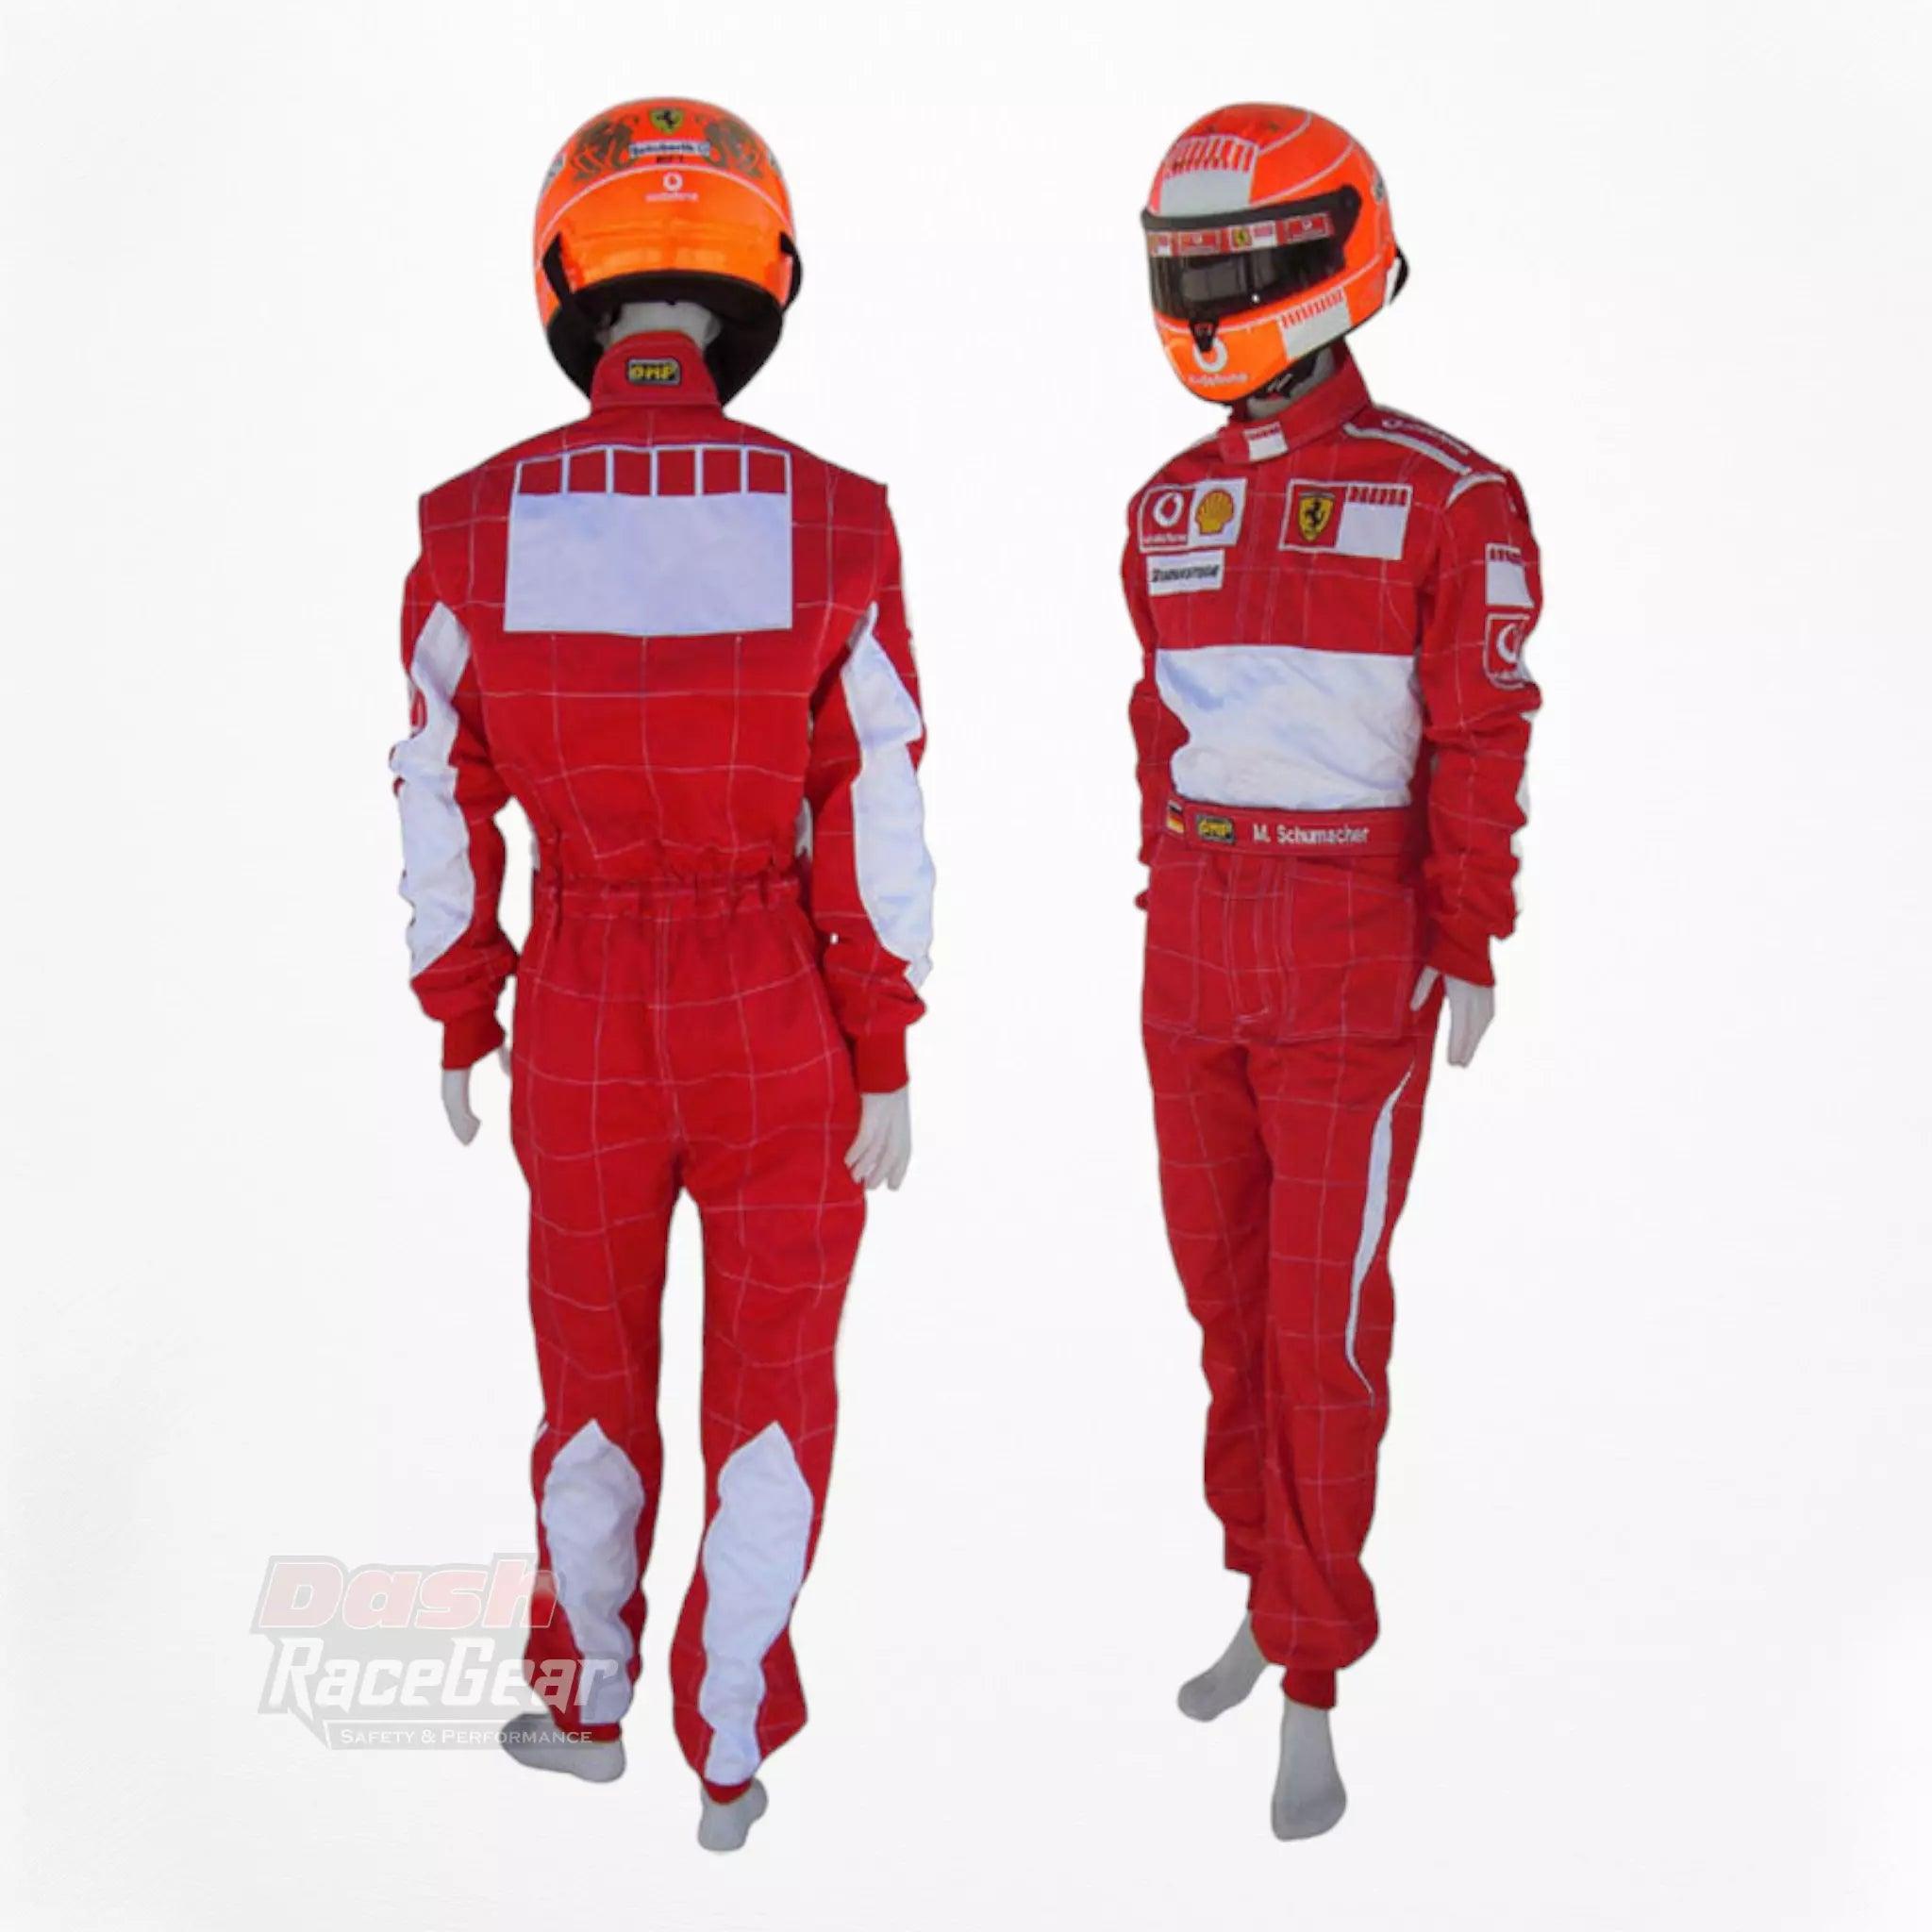 2006 Michael Schumacher BAR CODE Ferrari F1 Embroidered Racing Suit - Dash Racegear 